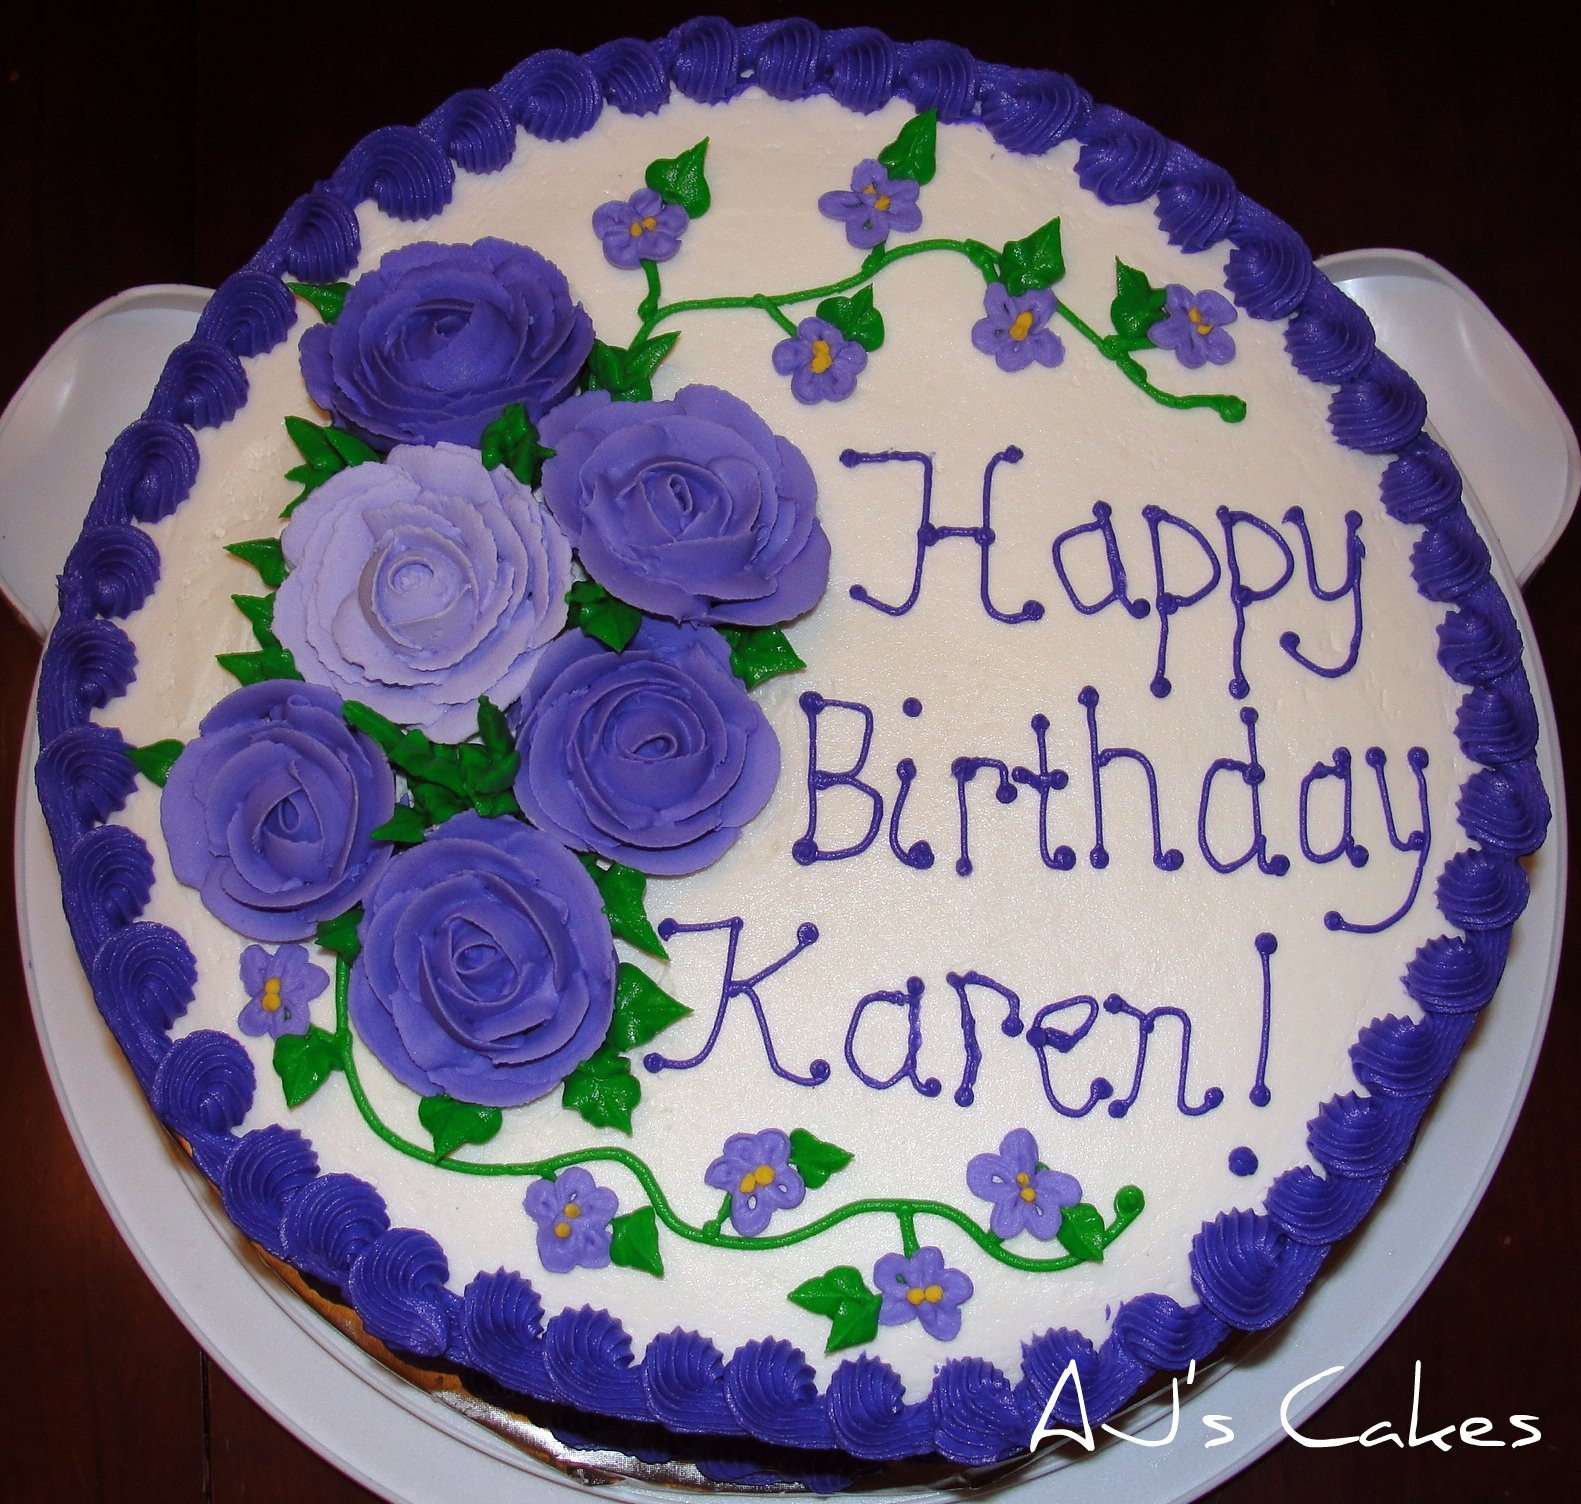 Best ideas about Happy Birthday Karen Cake
. Save or Pin AJ s Cakes Karen s Birthday Cake Now.